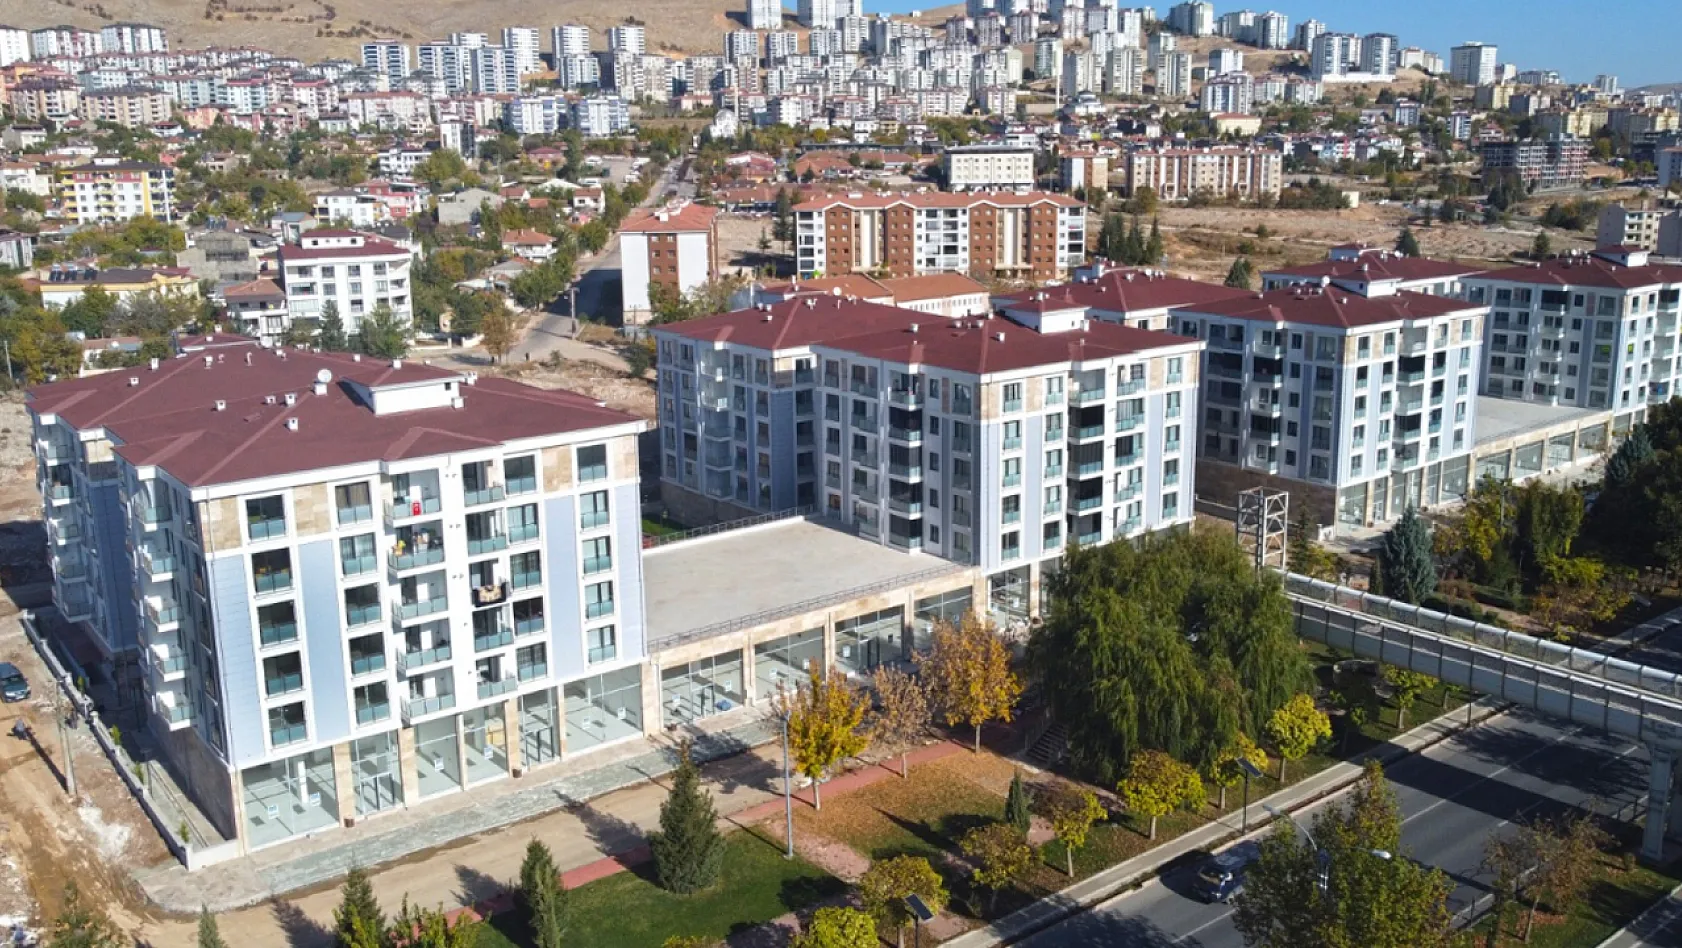 Elazığ Belediyesi Tüm Türkiye'ye Örnek Olacak: Tamamlandı ve Teslim Edildi